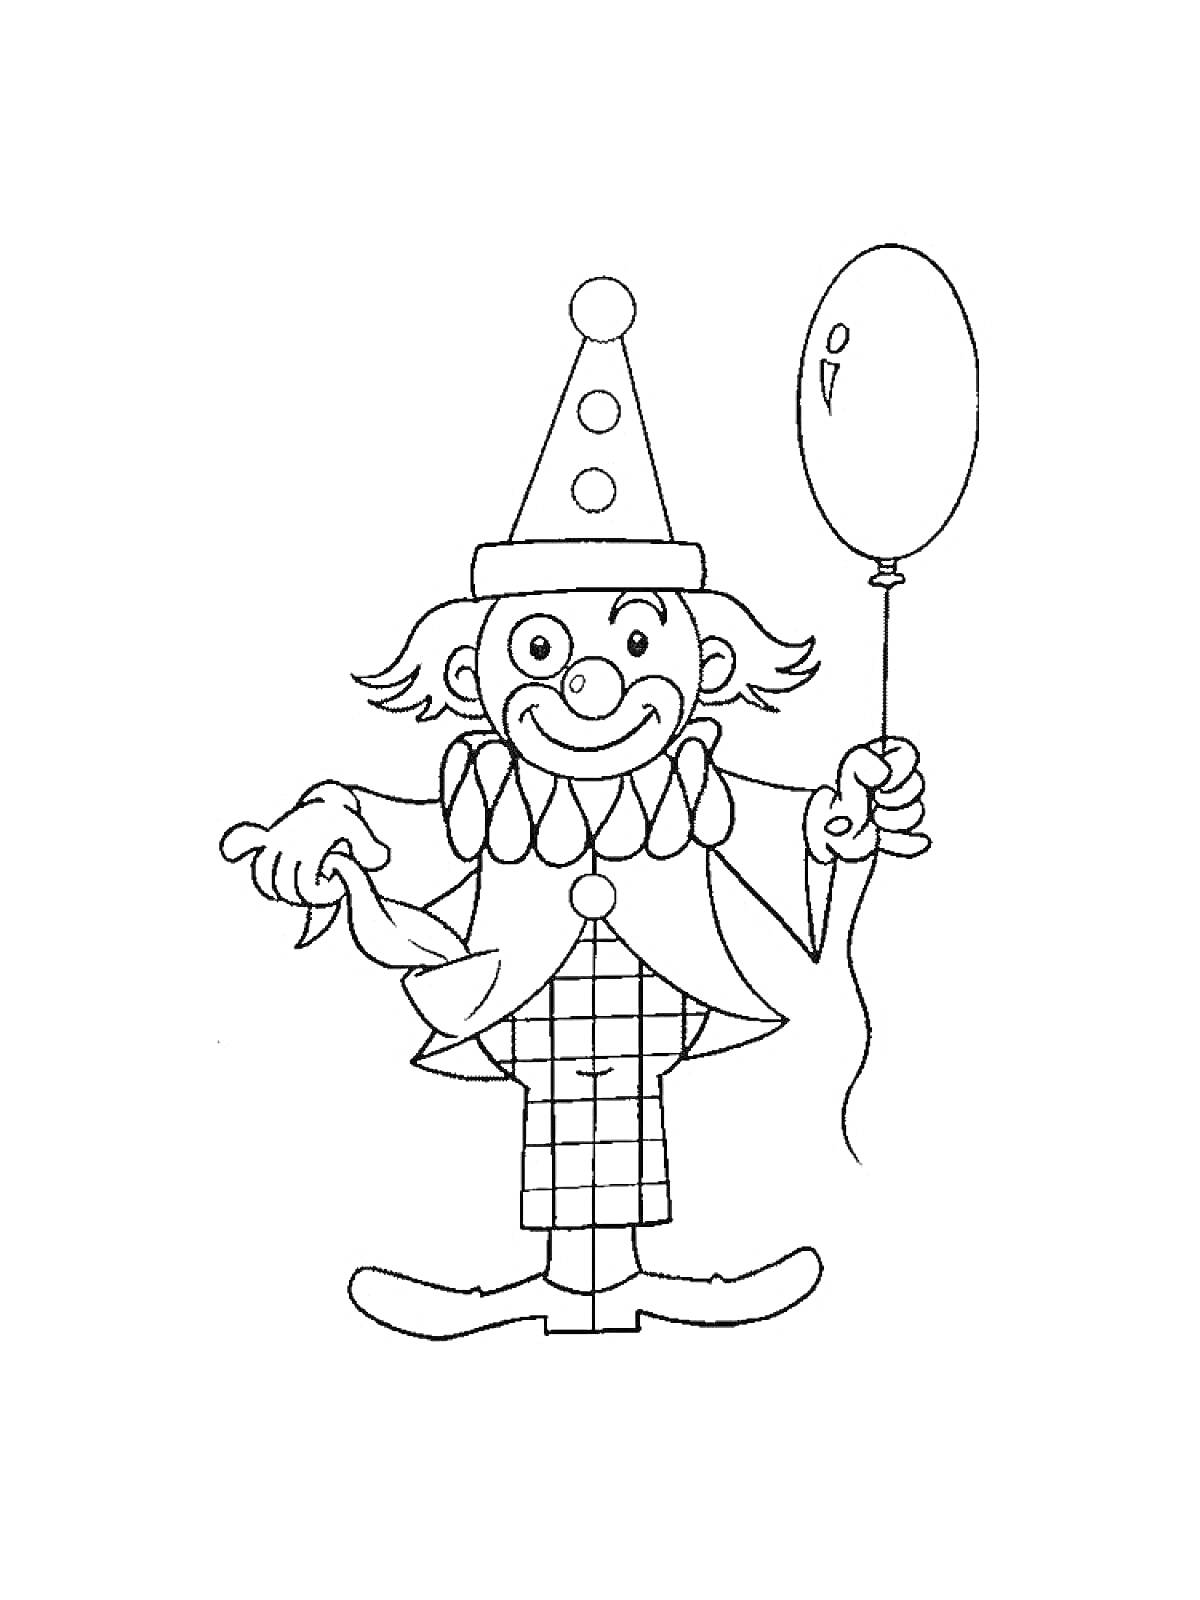 Раскраска Клоун с колпаком, в бантике и костюме, держащий воздушный шар